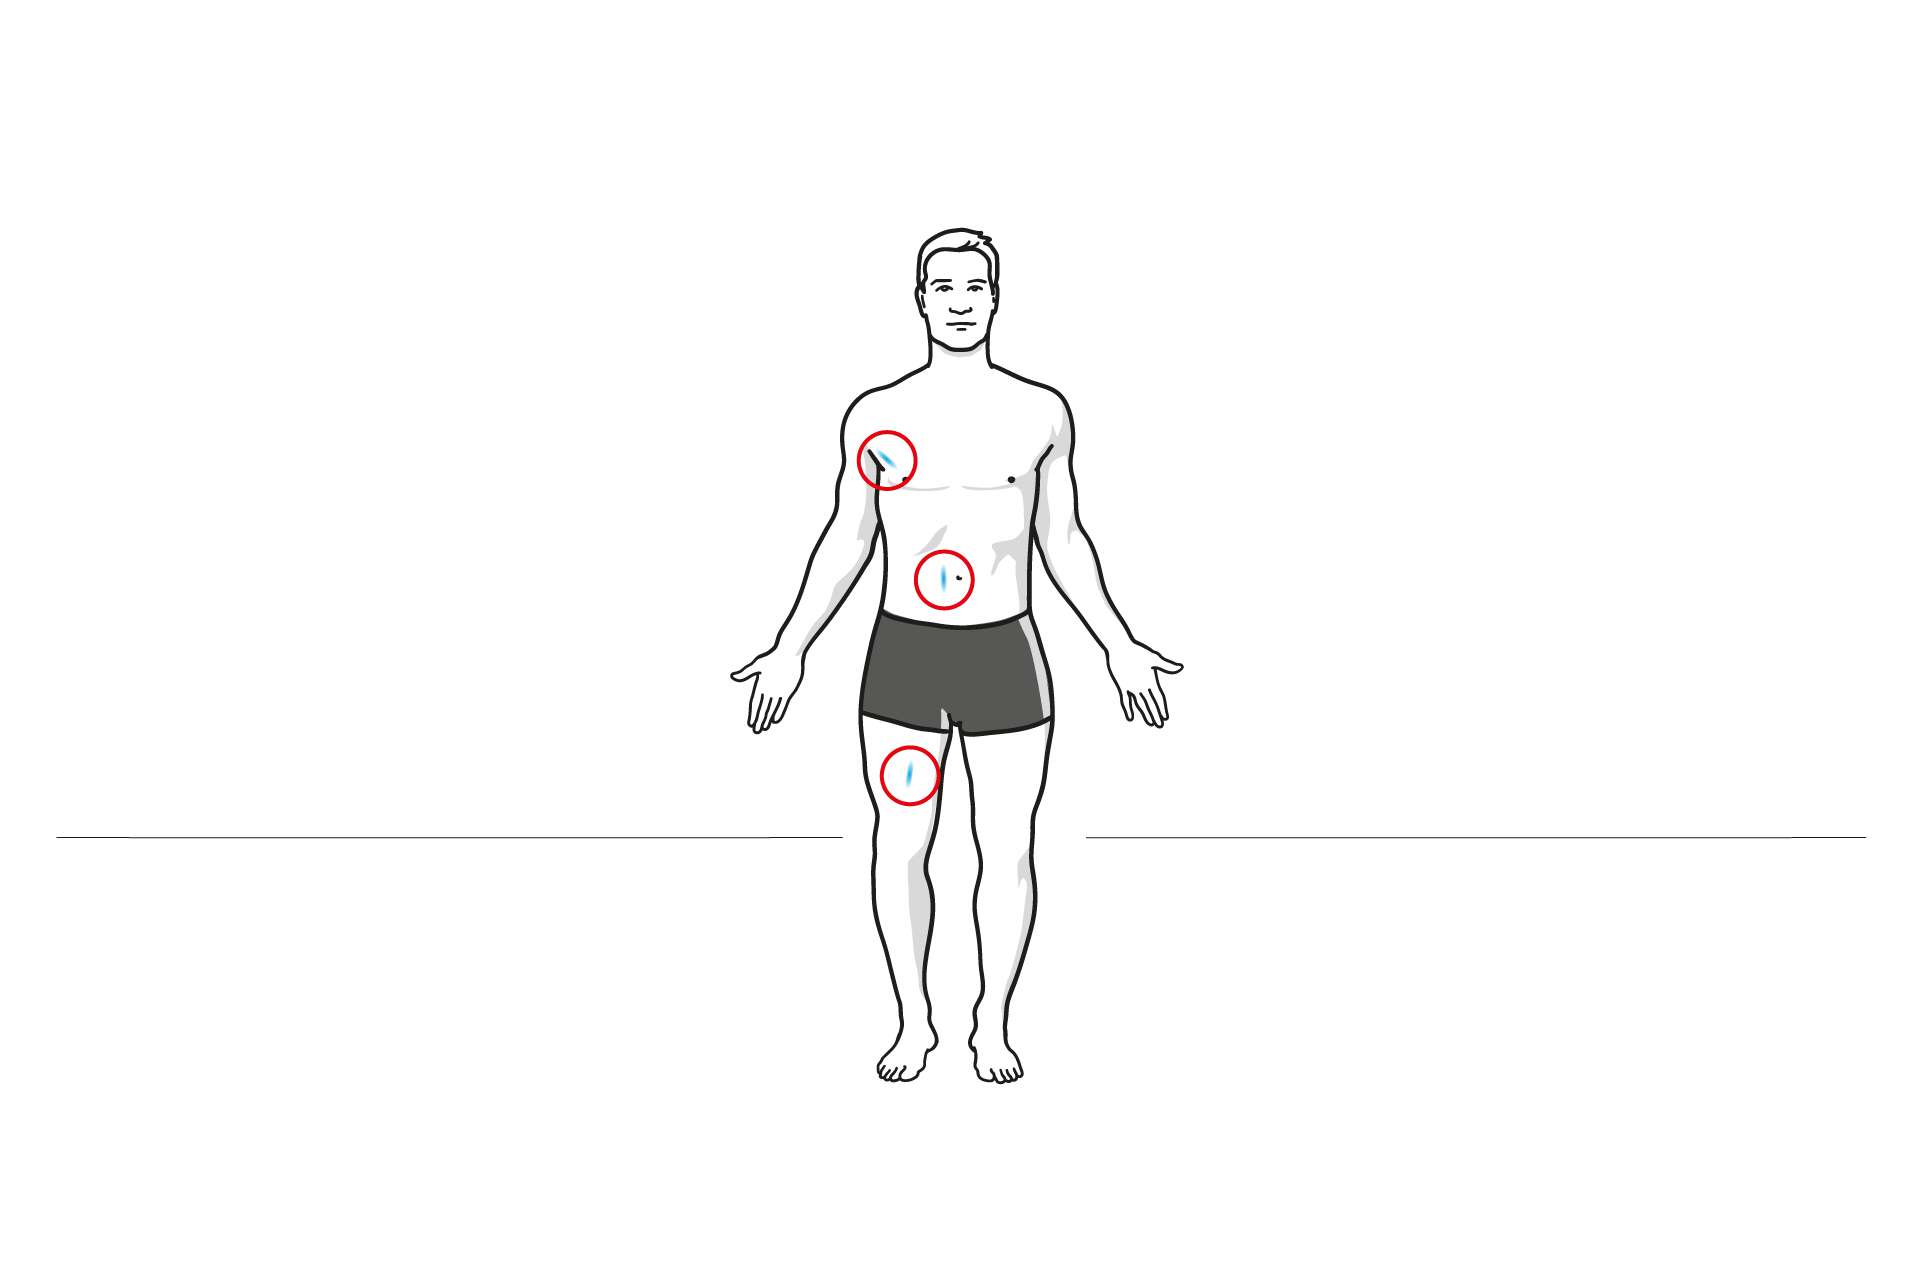 Illustration zur Körperfettmessung